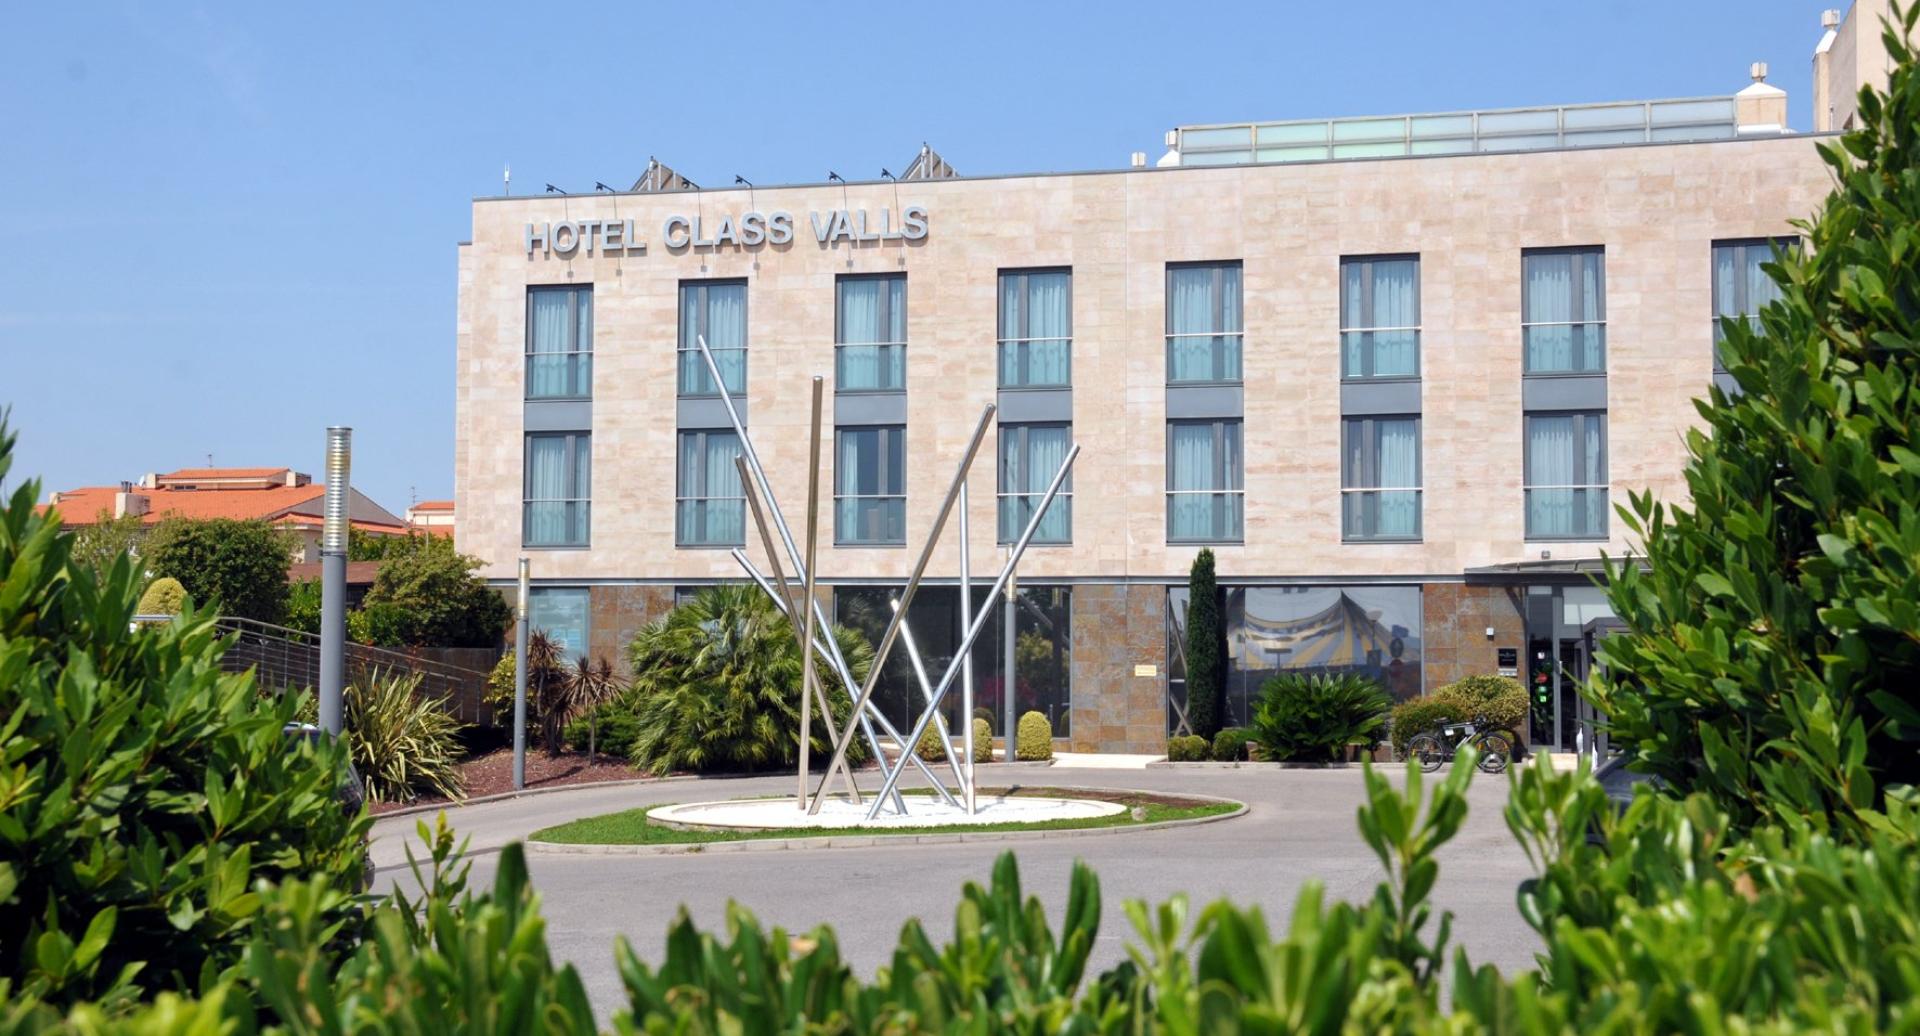 Hotel Class Valls in Valls, Tarragona